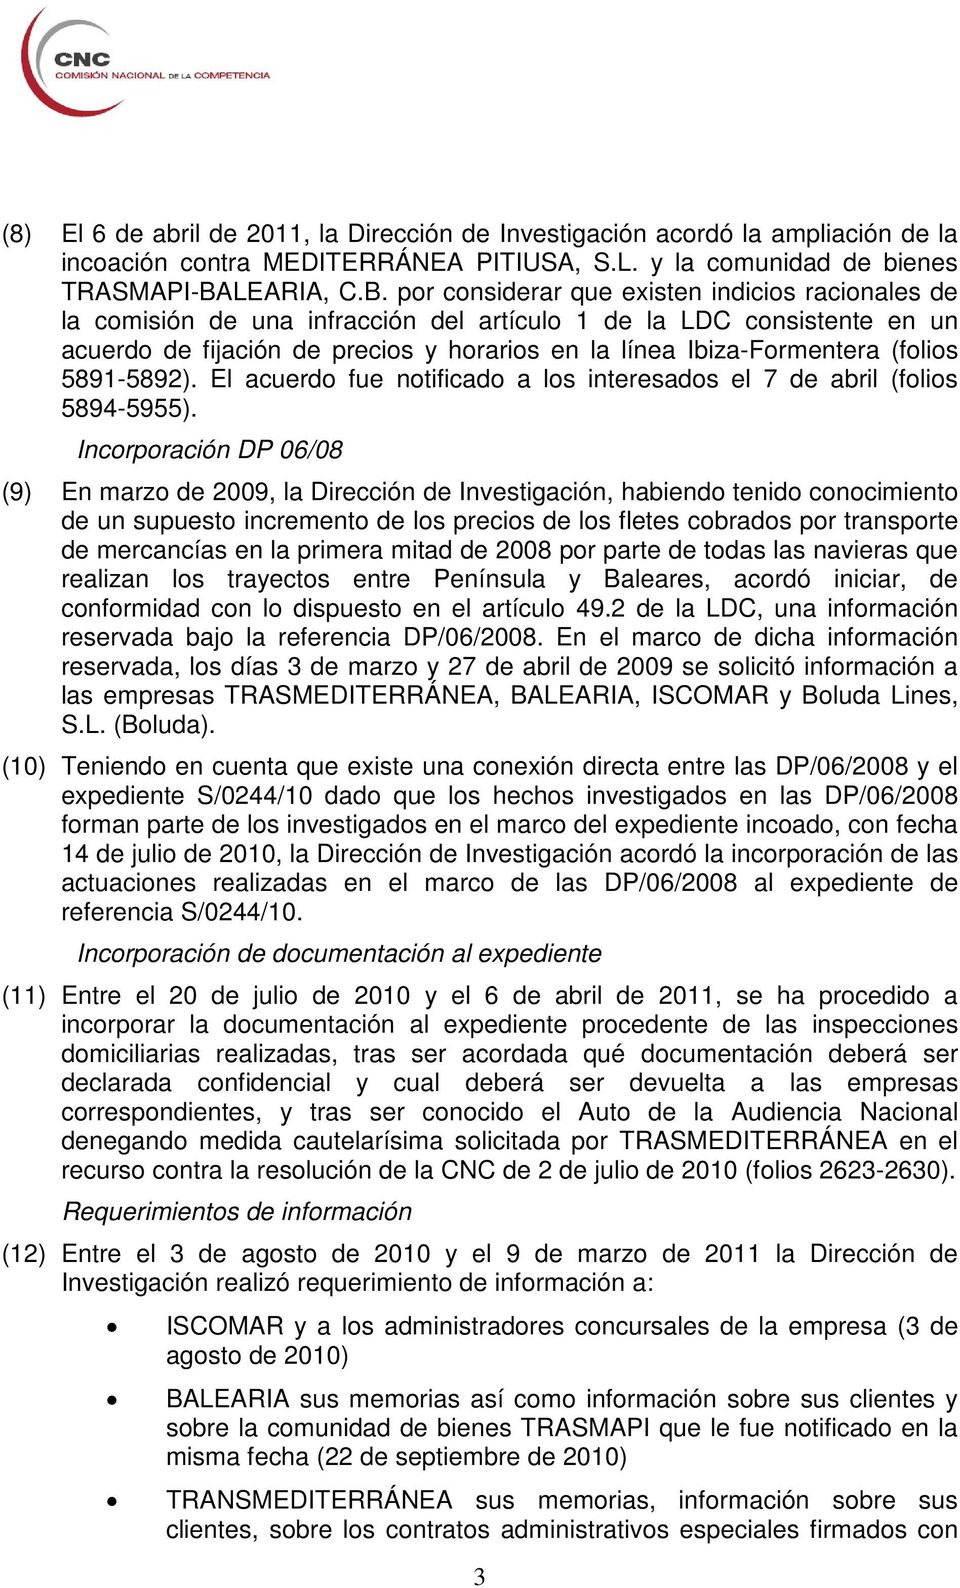 por considerar que existen indicios racionales de la comisión de una infracción del artículo 1 de la LDC consistente en un acuerdo de fijación de precios y horarios en la línea Ibiza-Formentera